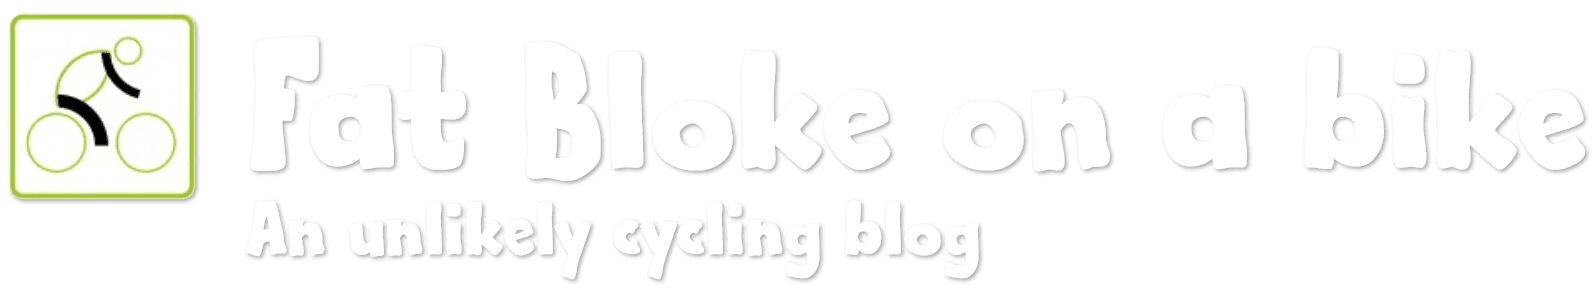 Fat Bloke on a Bike logo - An unlikely cycling blog